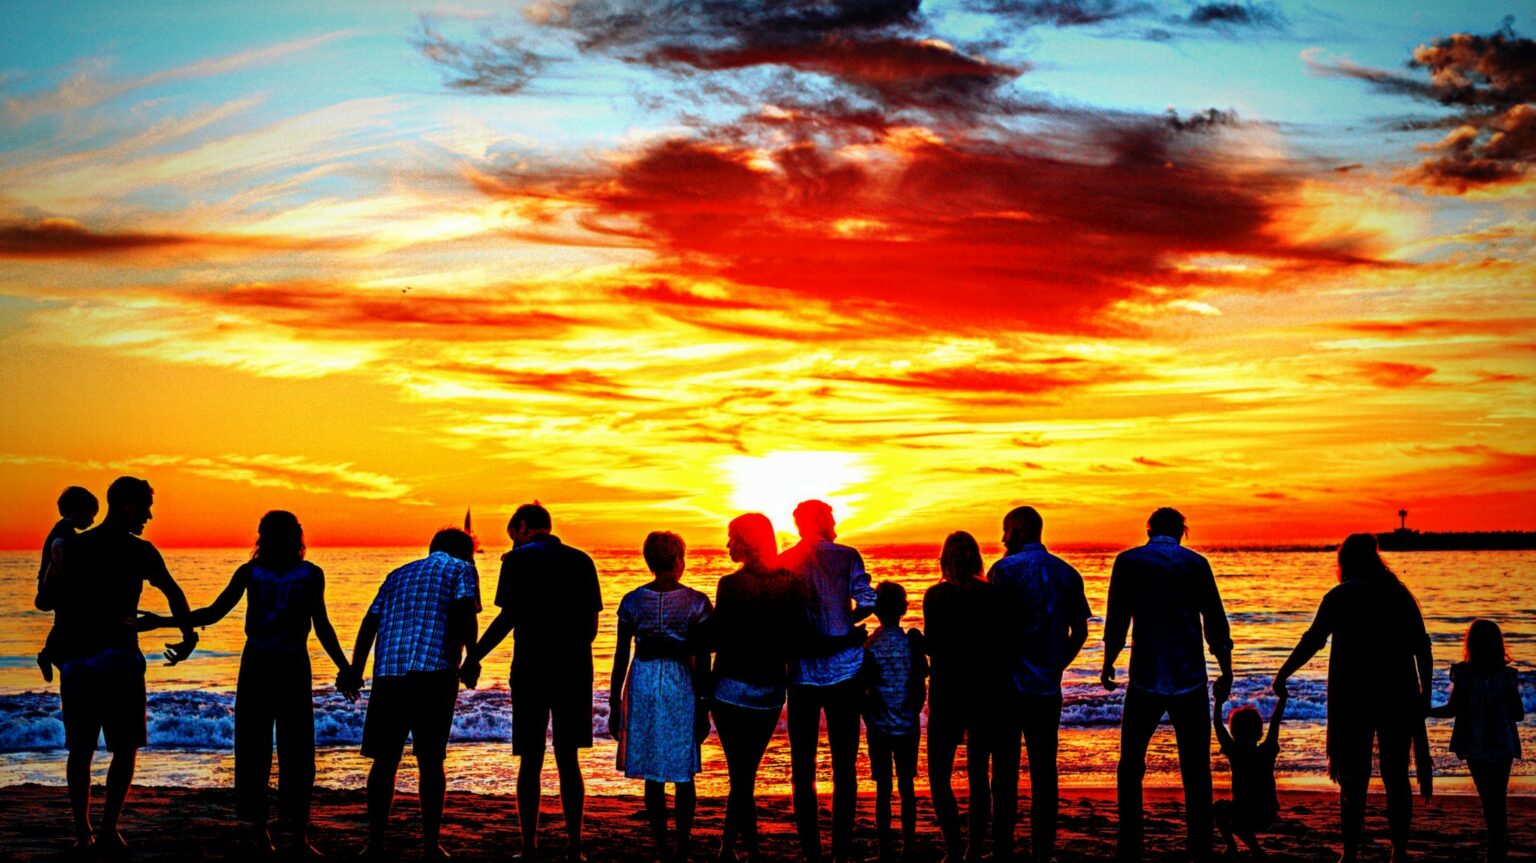 Bild mit verschiedenen Menschen im Gegenlicht als Silhouette vor einem Gewässer und dem Sonnenuntergang.